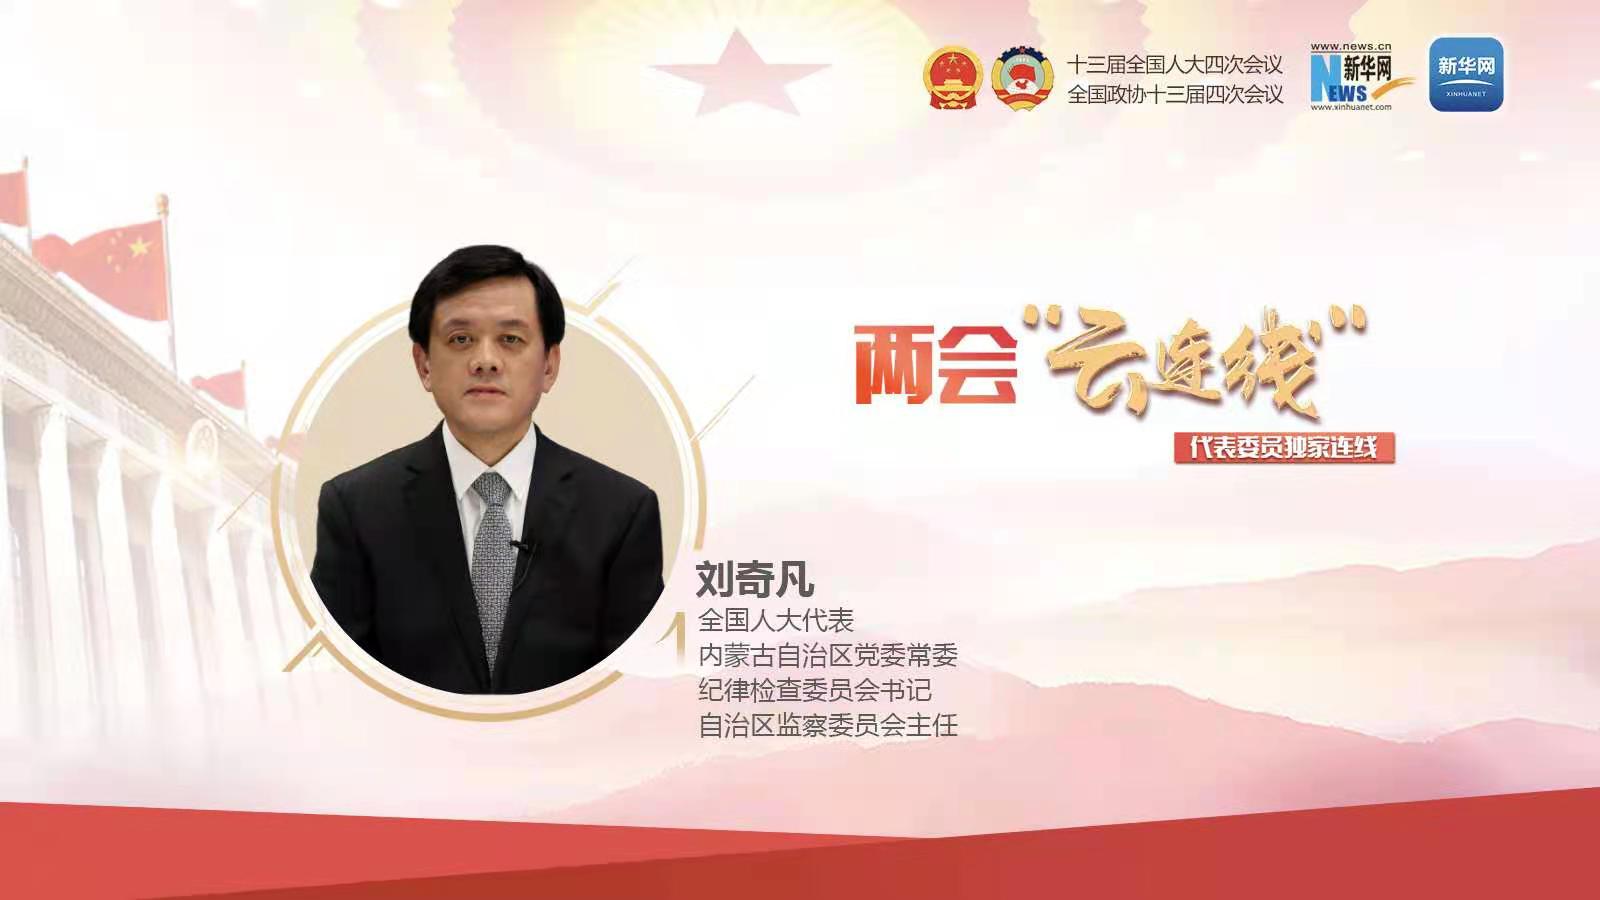 刘奇凡代表：常态化治理涉煤腐败 发挥监督职能优化营商环境